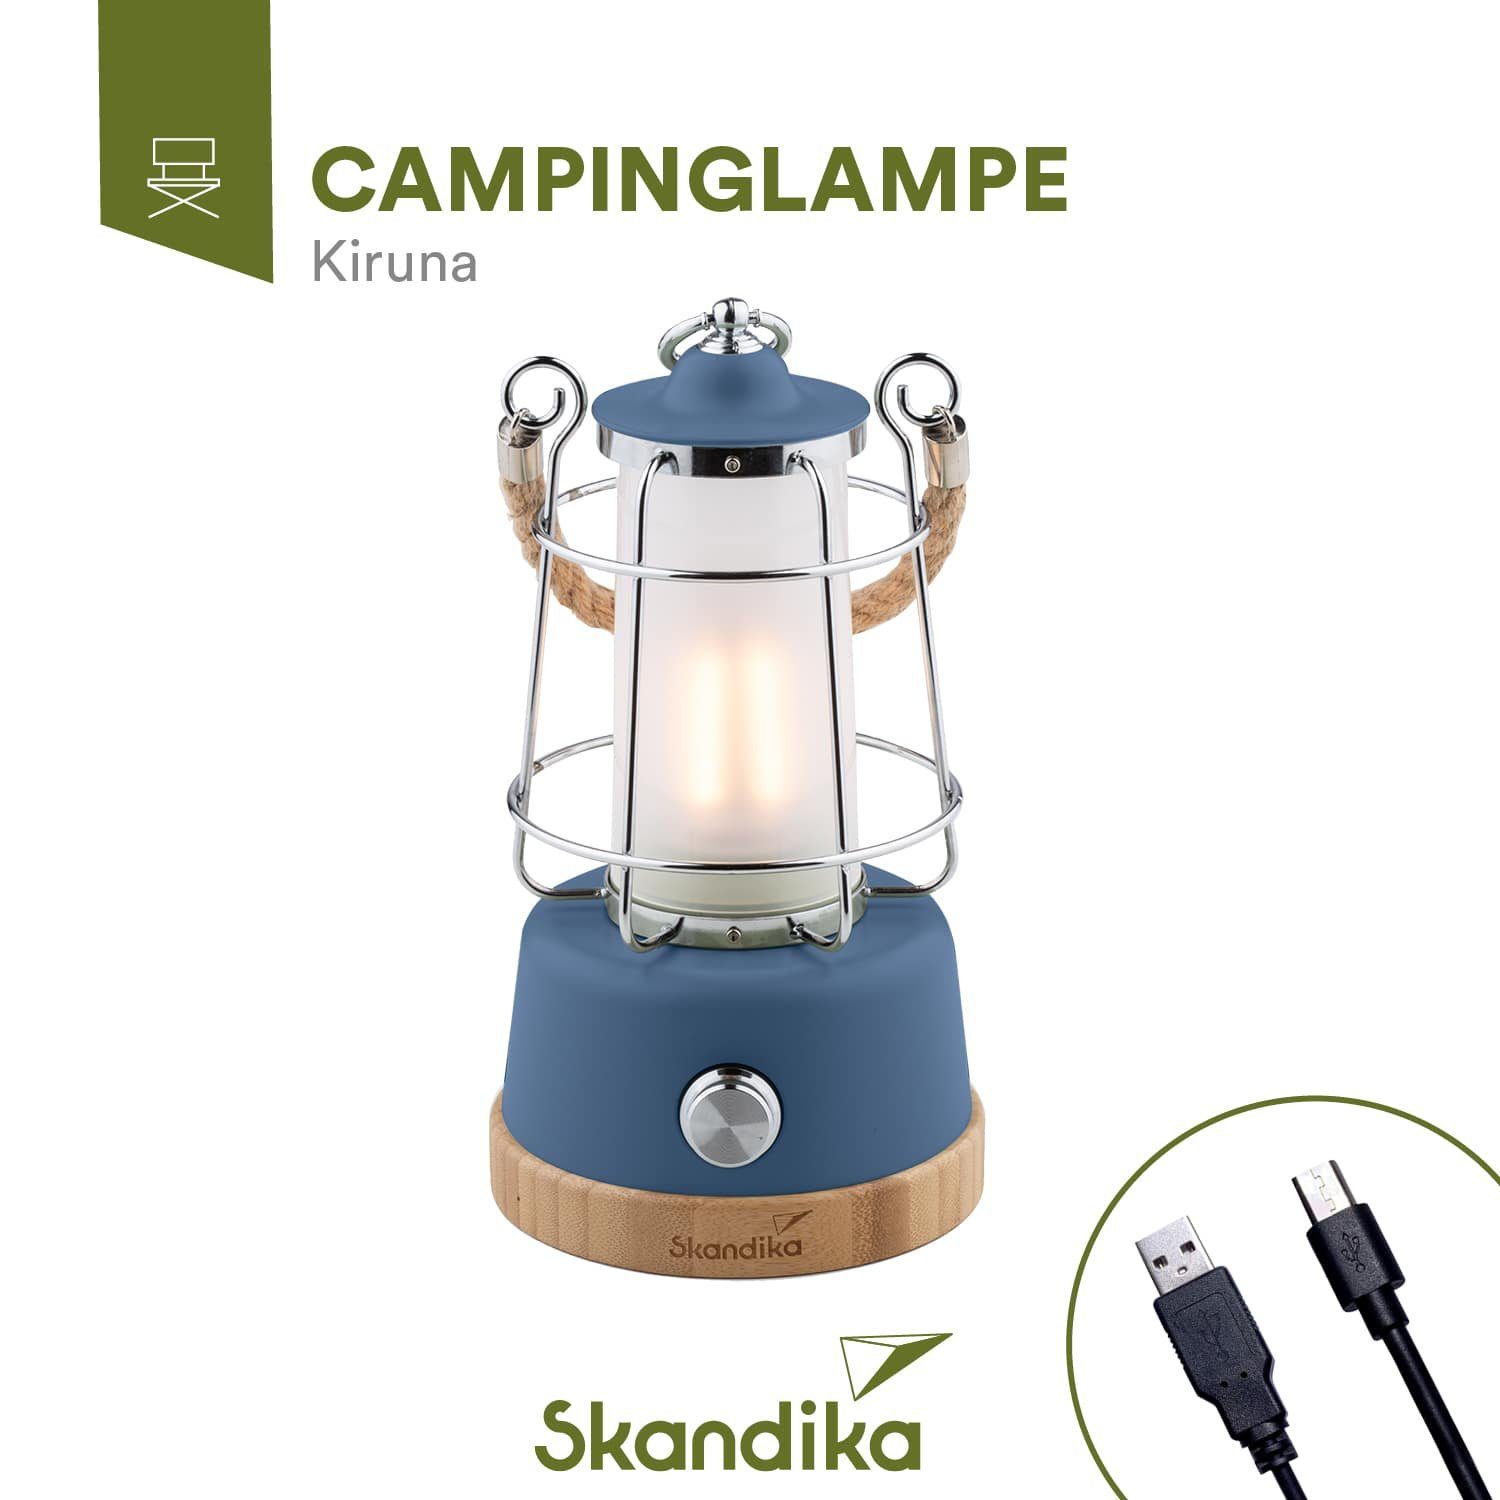 Campinglampe Powerbank, stufenlos Powerbank mit 5000 Gartenleuchte dimmbar mit Campinglampe Skandika mAh, Kiruna, blau LED